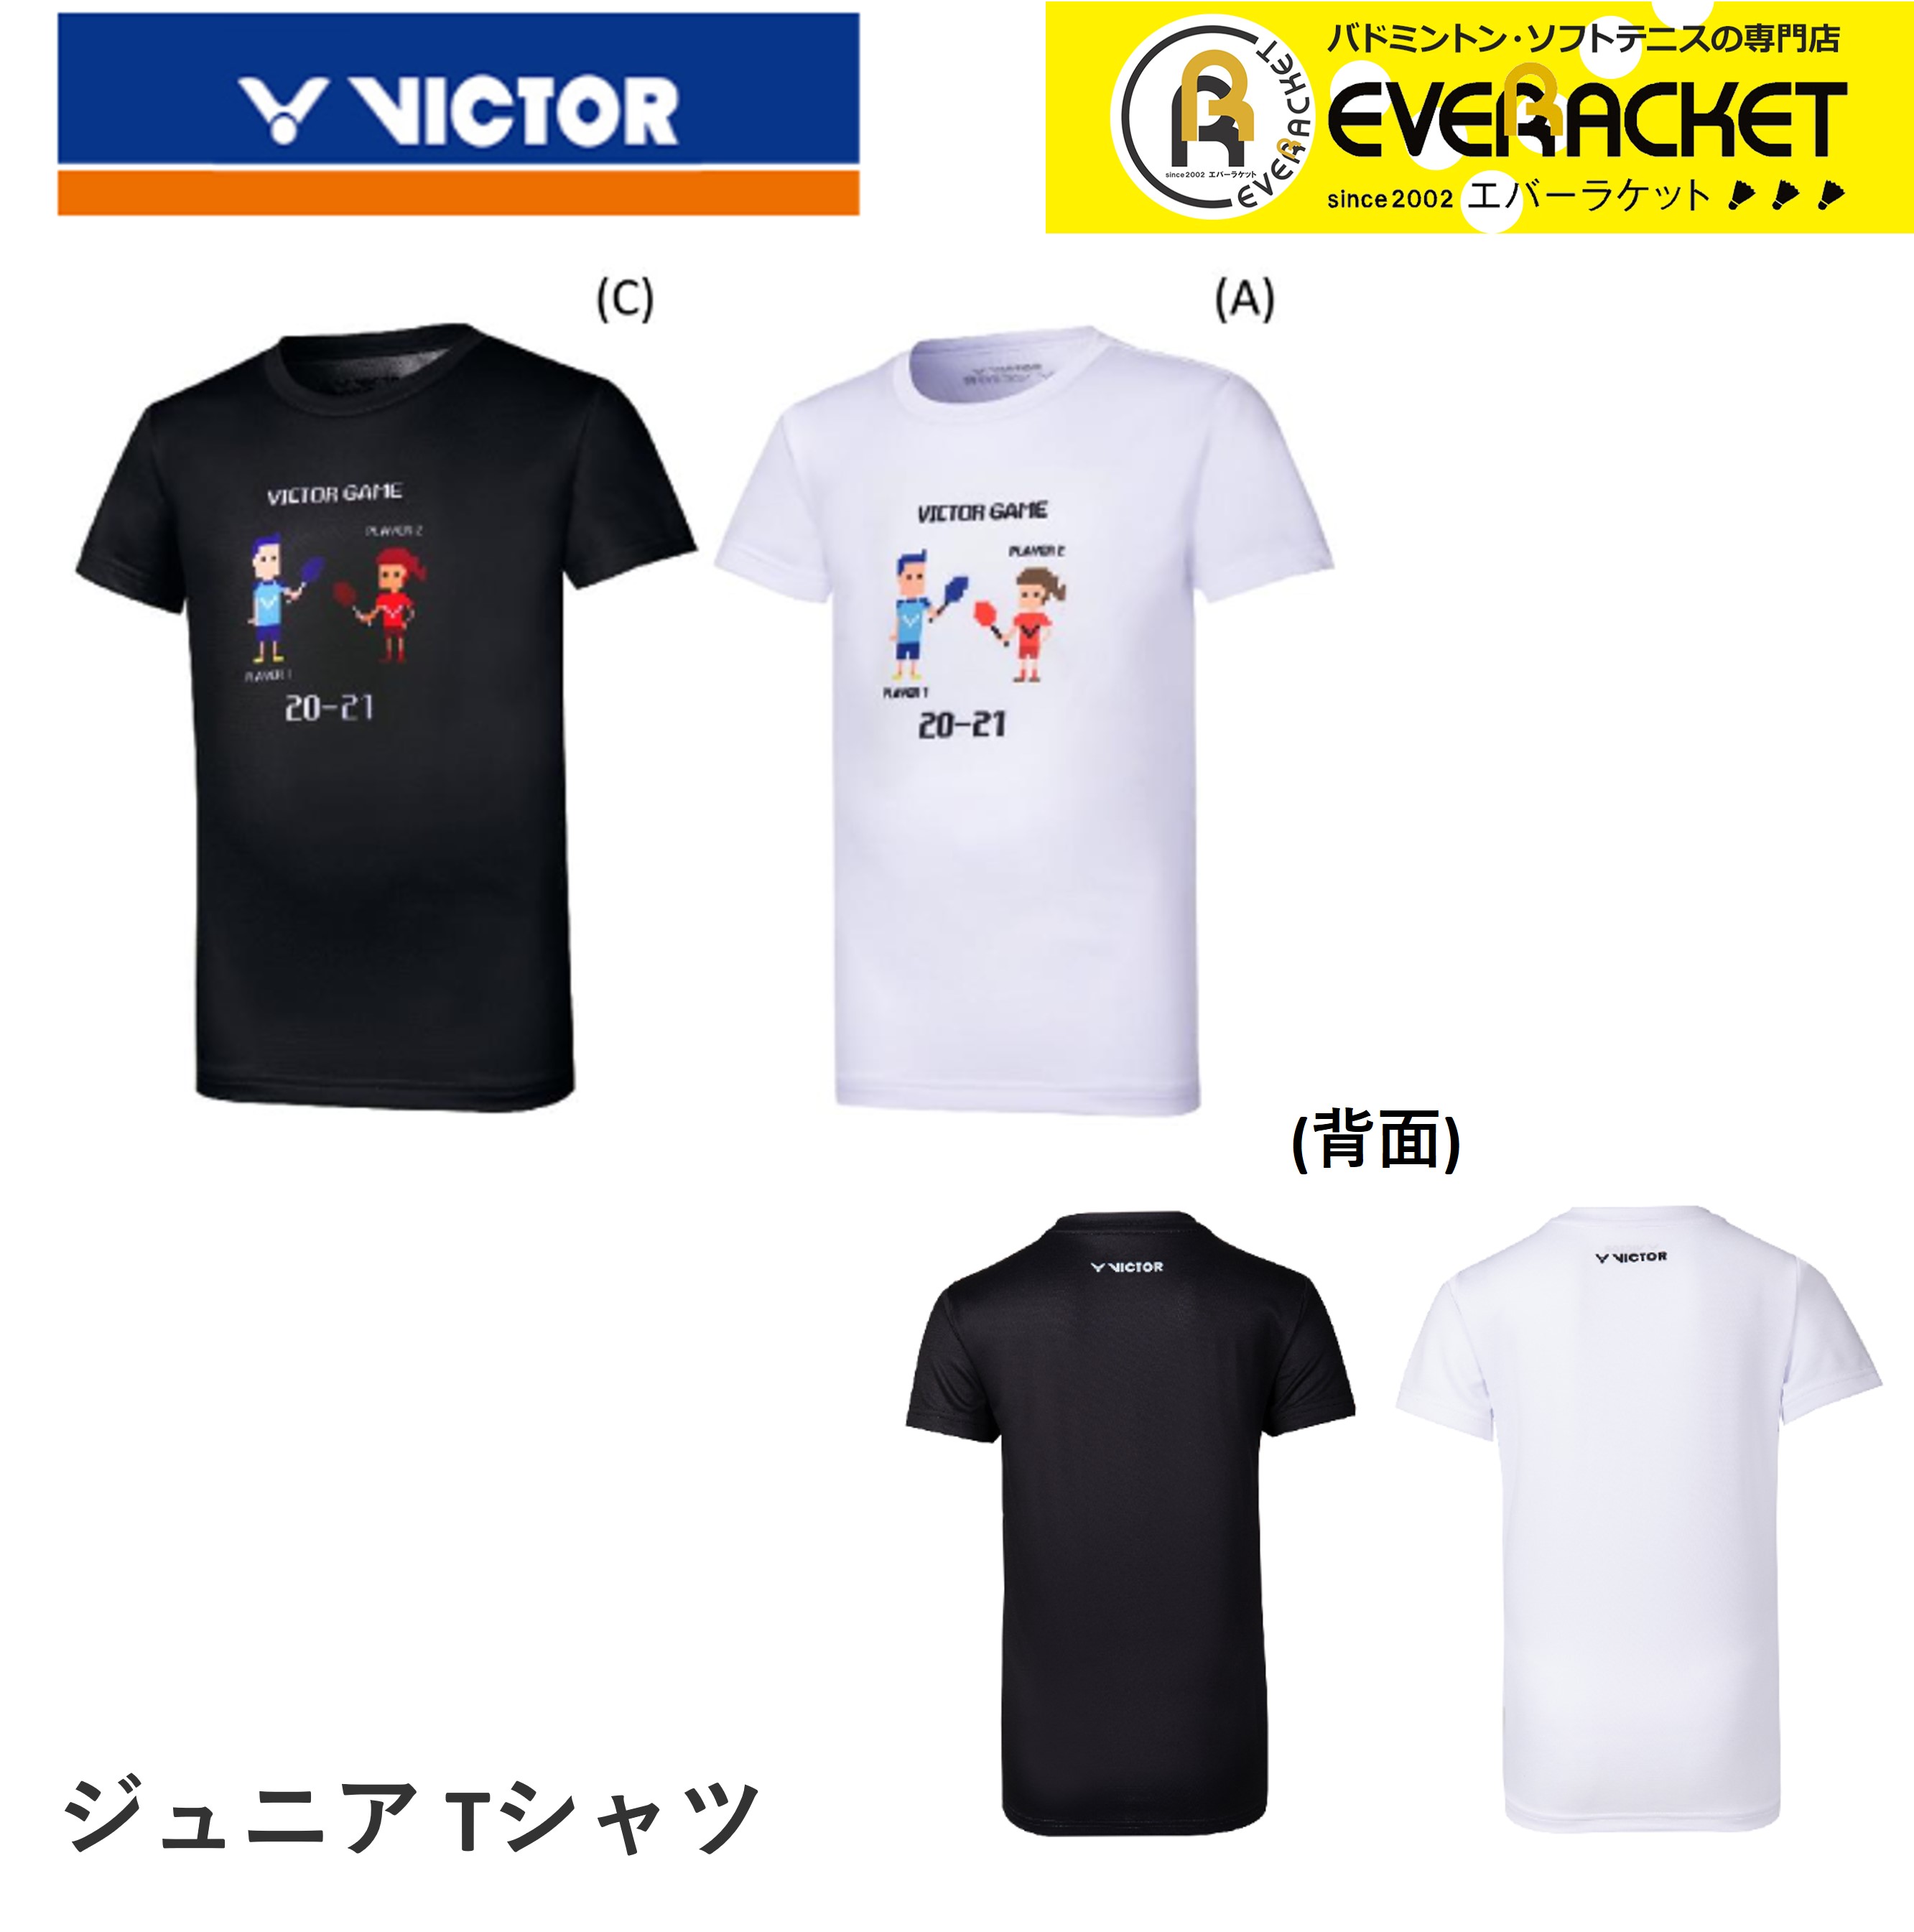 ビクター VICTOR ウエア 長袖 ロングTシャツ T-85100